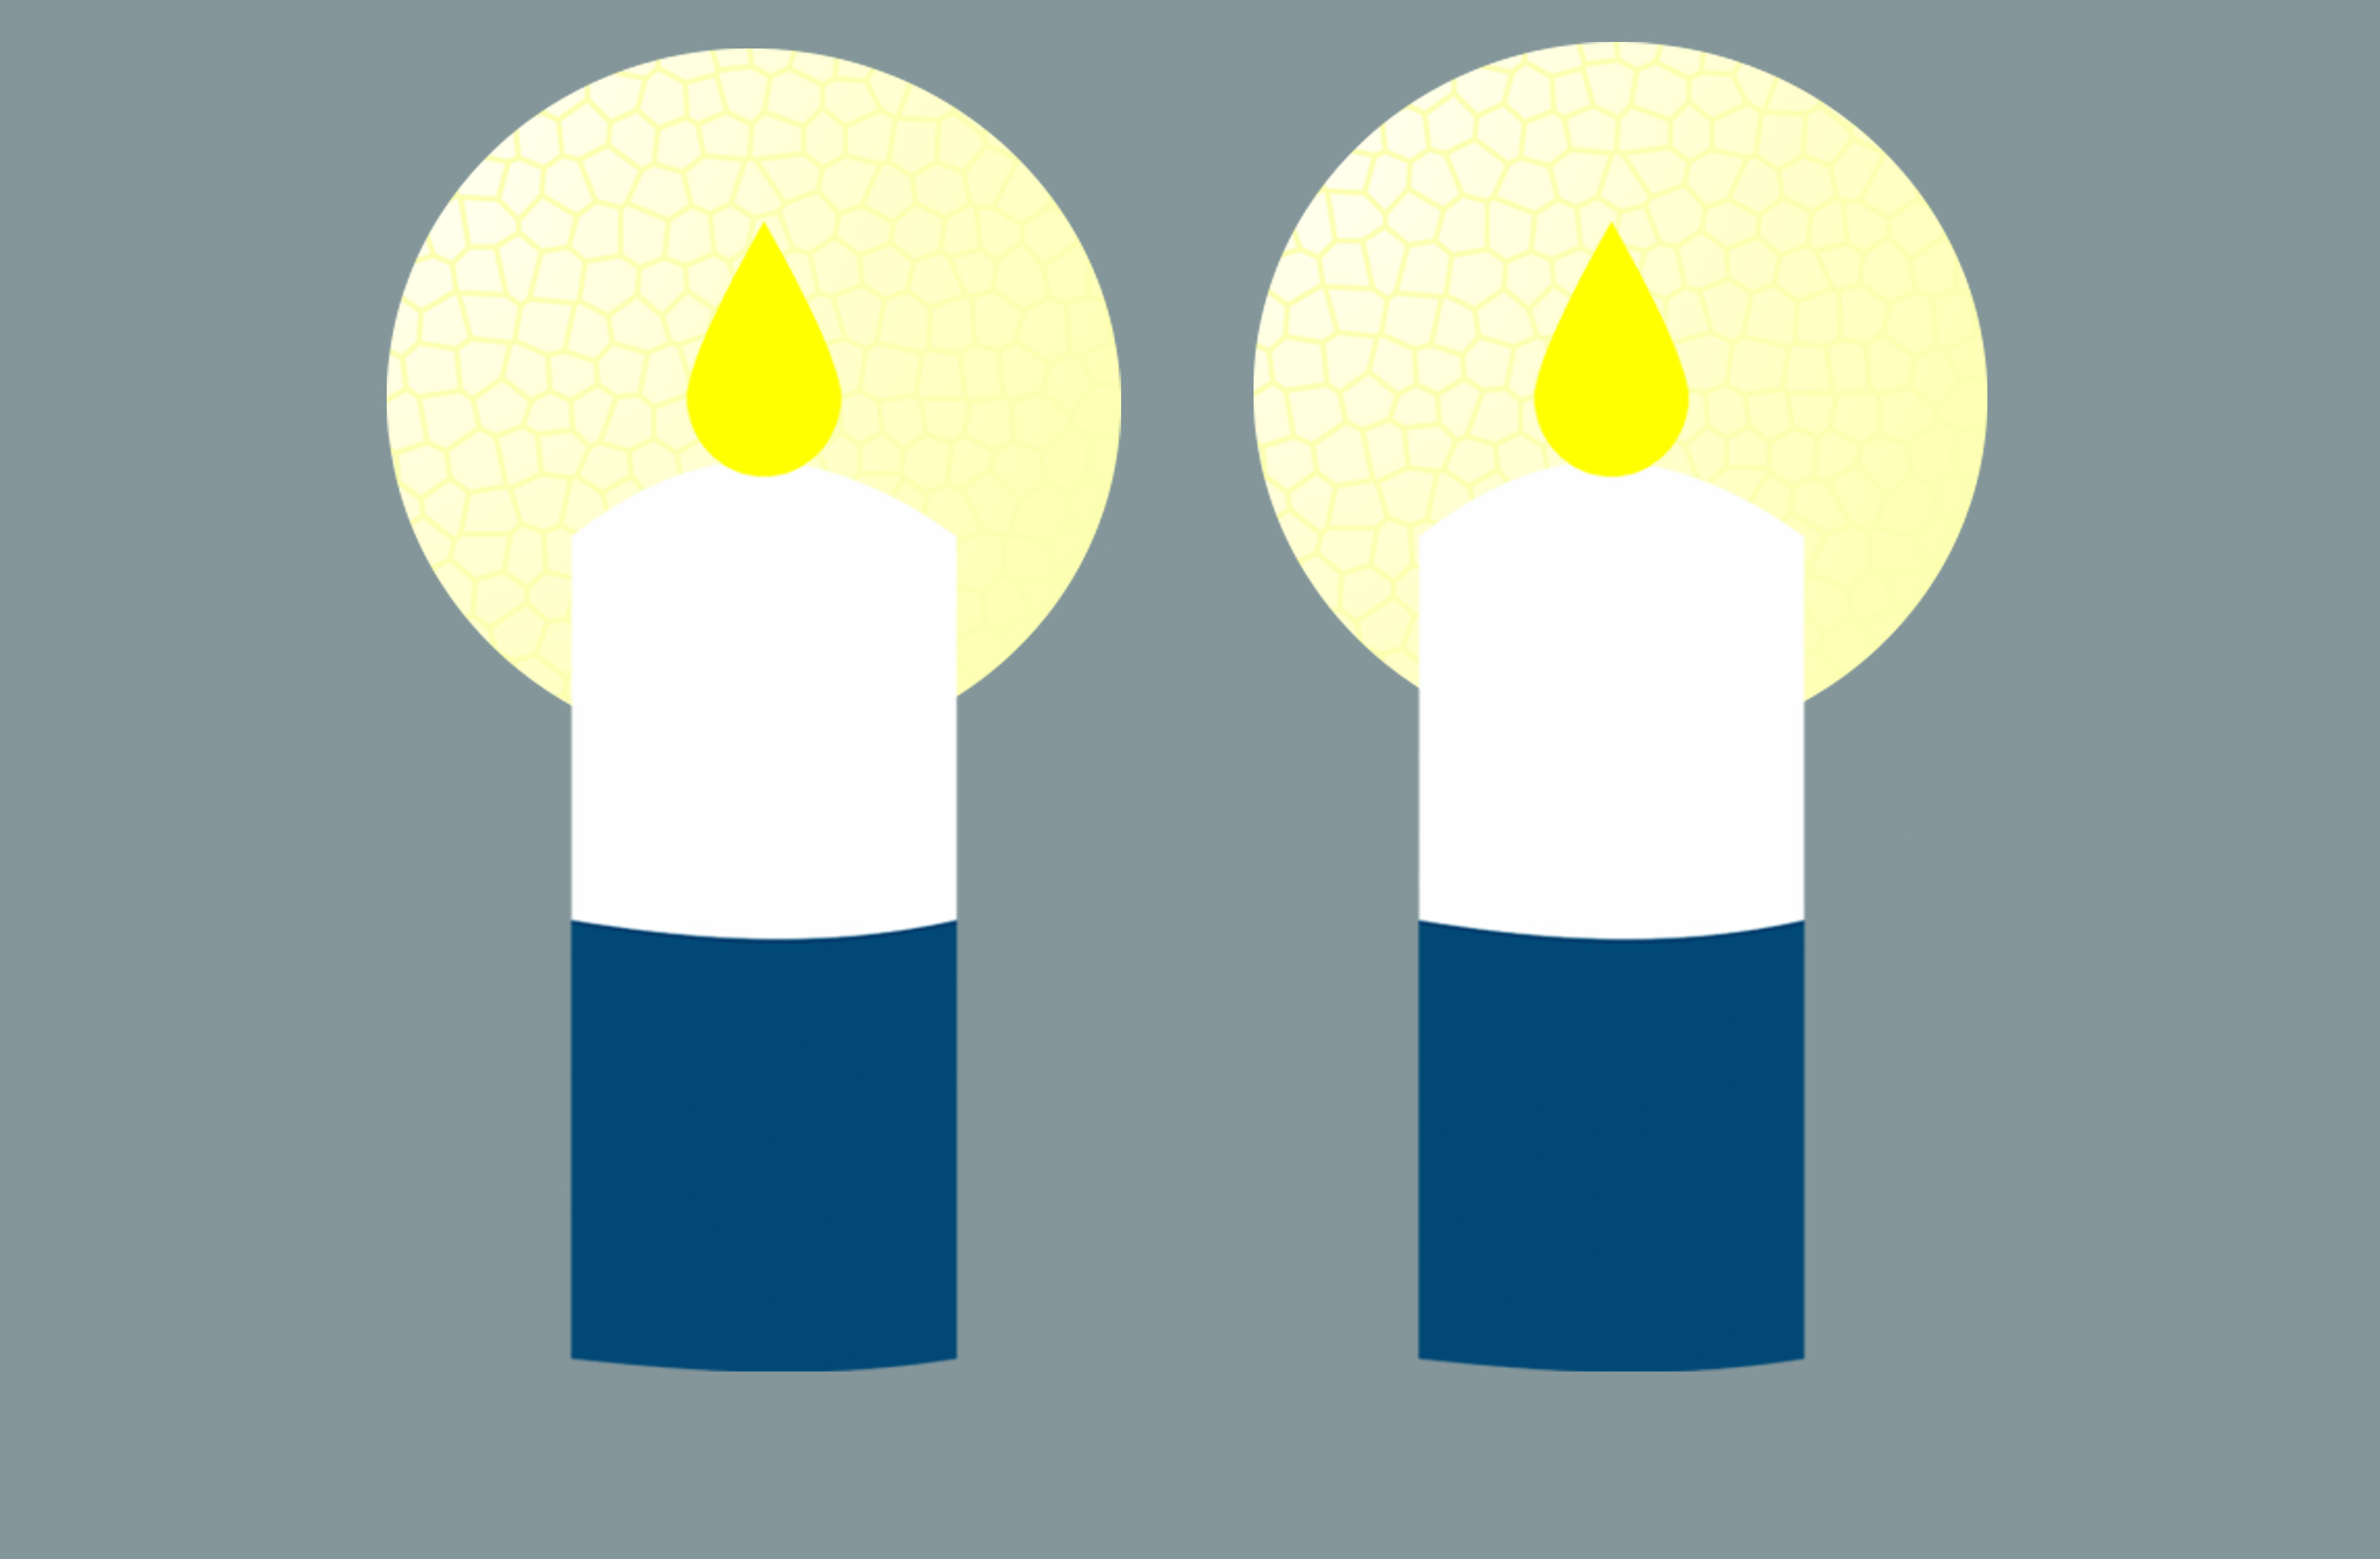 Kaksi piirrettyä sinivalkoista kynttilää loistavat harmaata taustaa vasten.